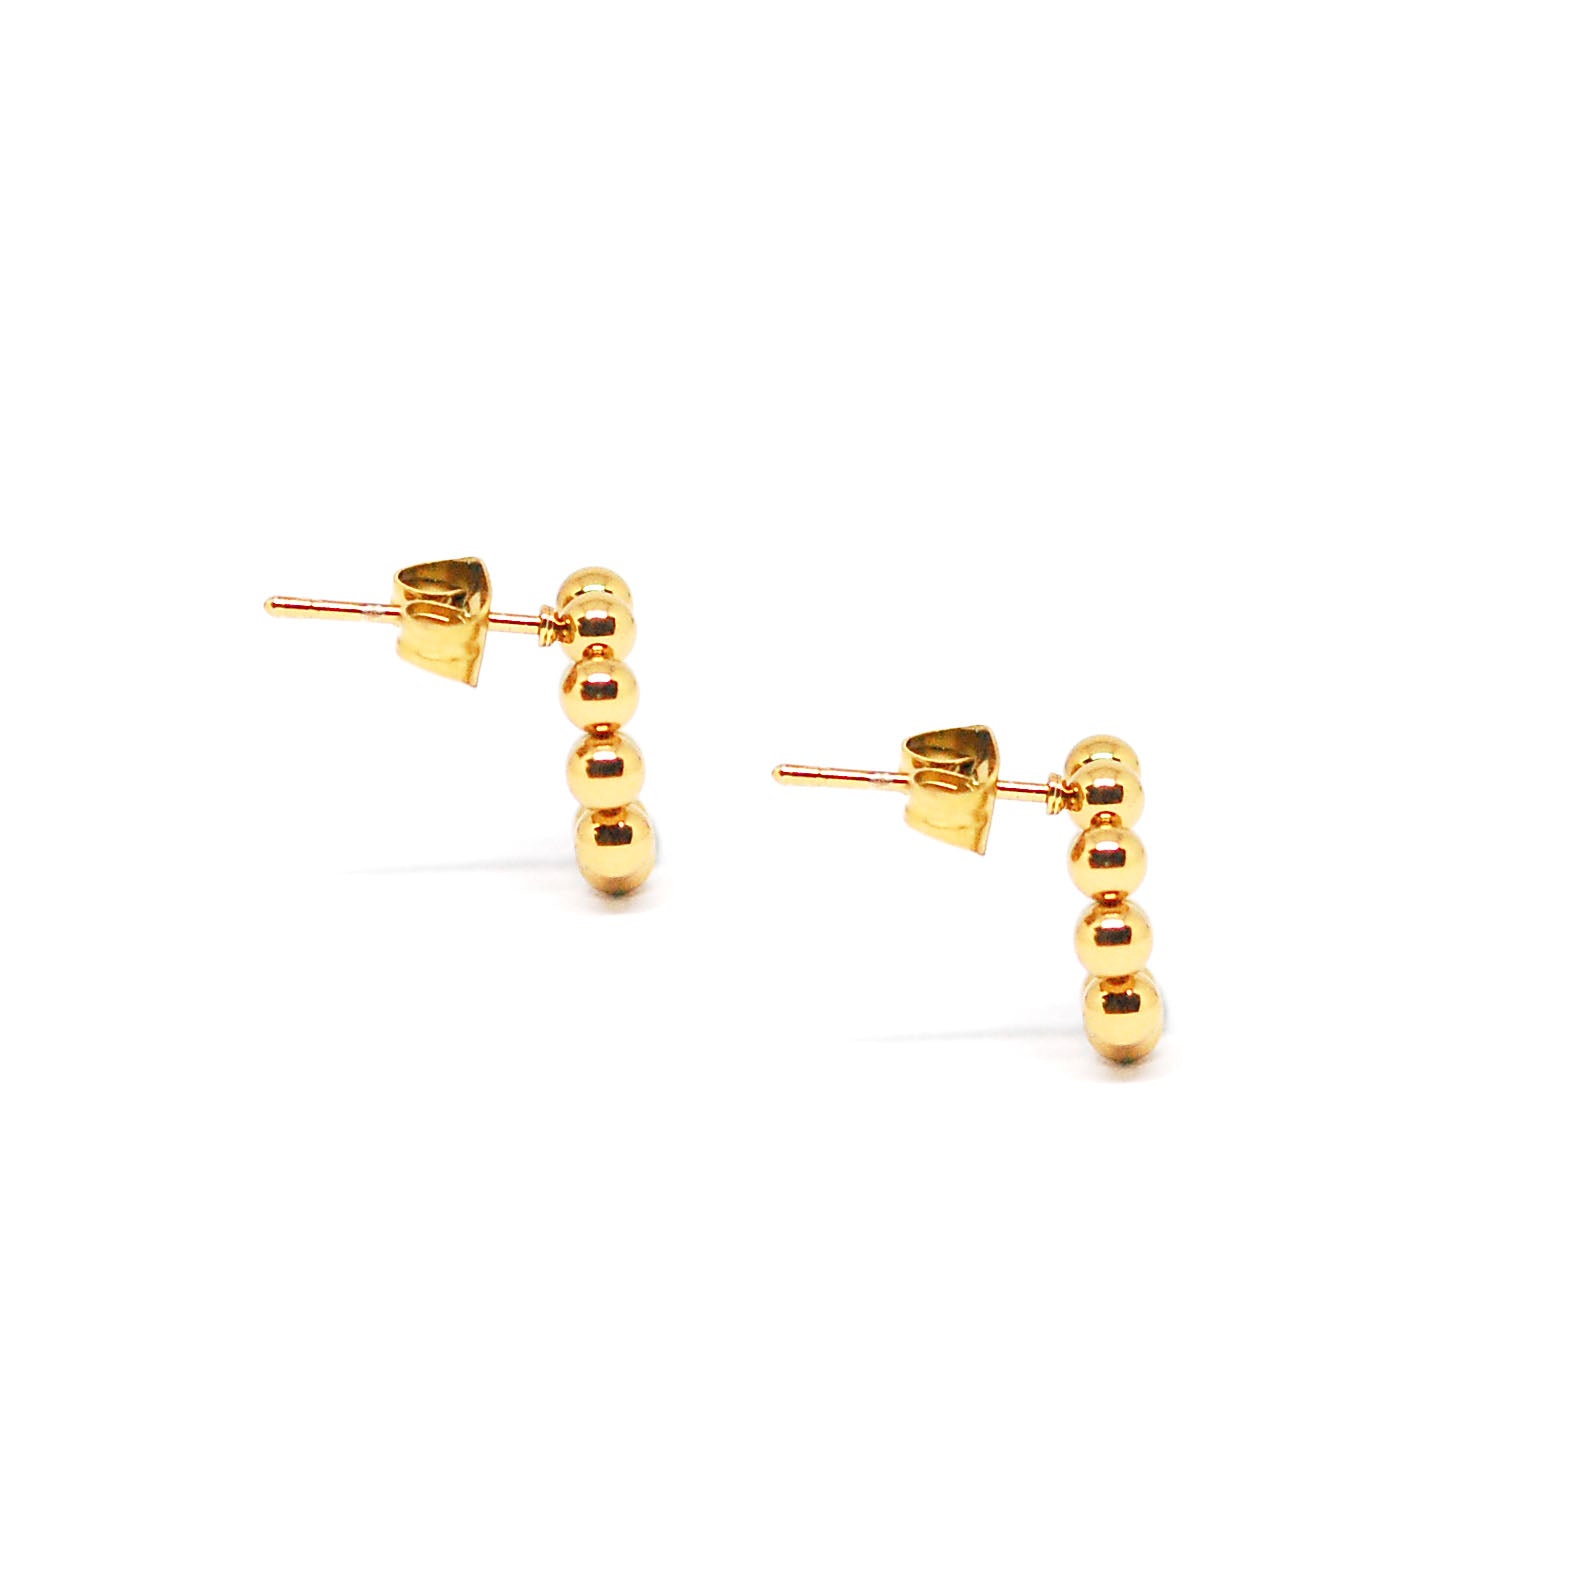 ESE 7697: All IPG Multi-Ball Circle Hoop Earrings (12mm)